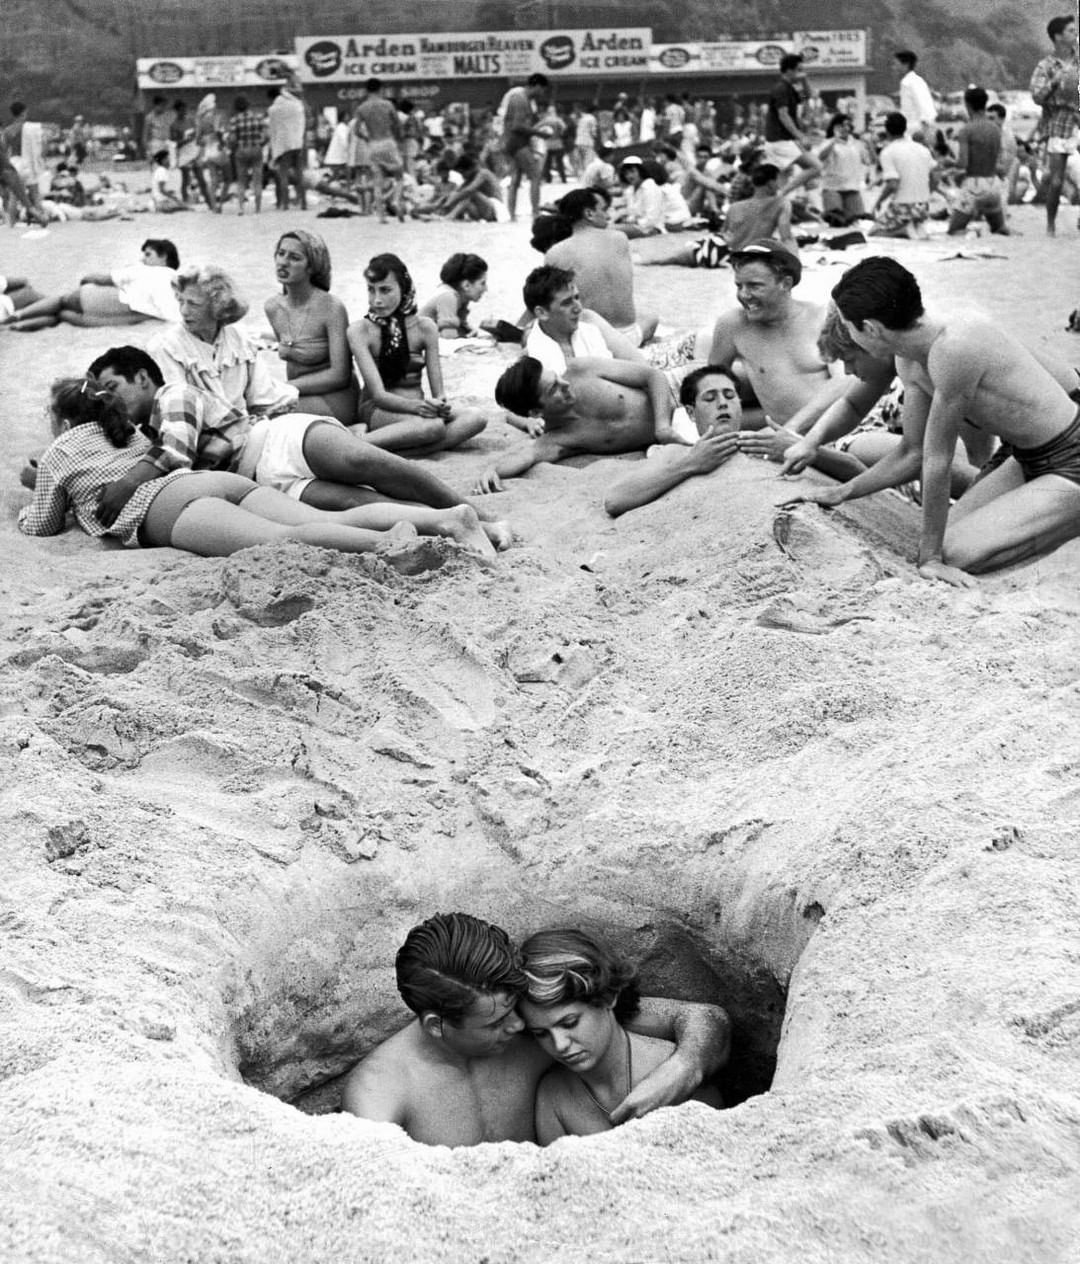 Un couple se fait des câlins en s’asseyant dans un trou alors que d’autres profitent de la plage le 4 juillet à Santa Monica, Californie, 1950. (Photographié par Ralph Crane)